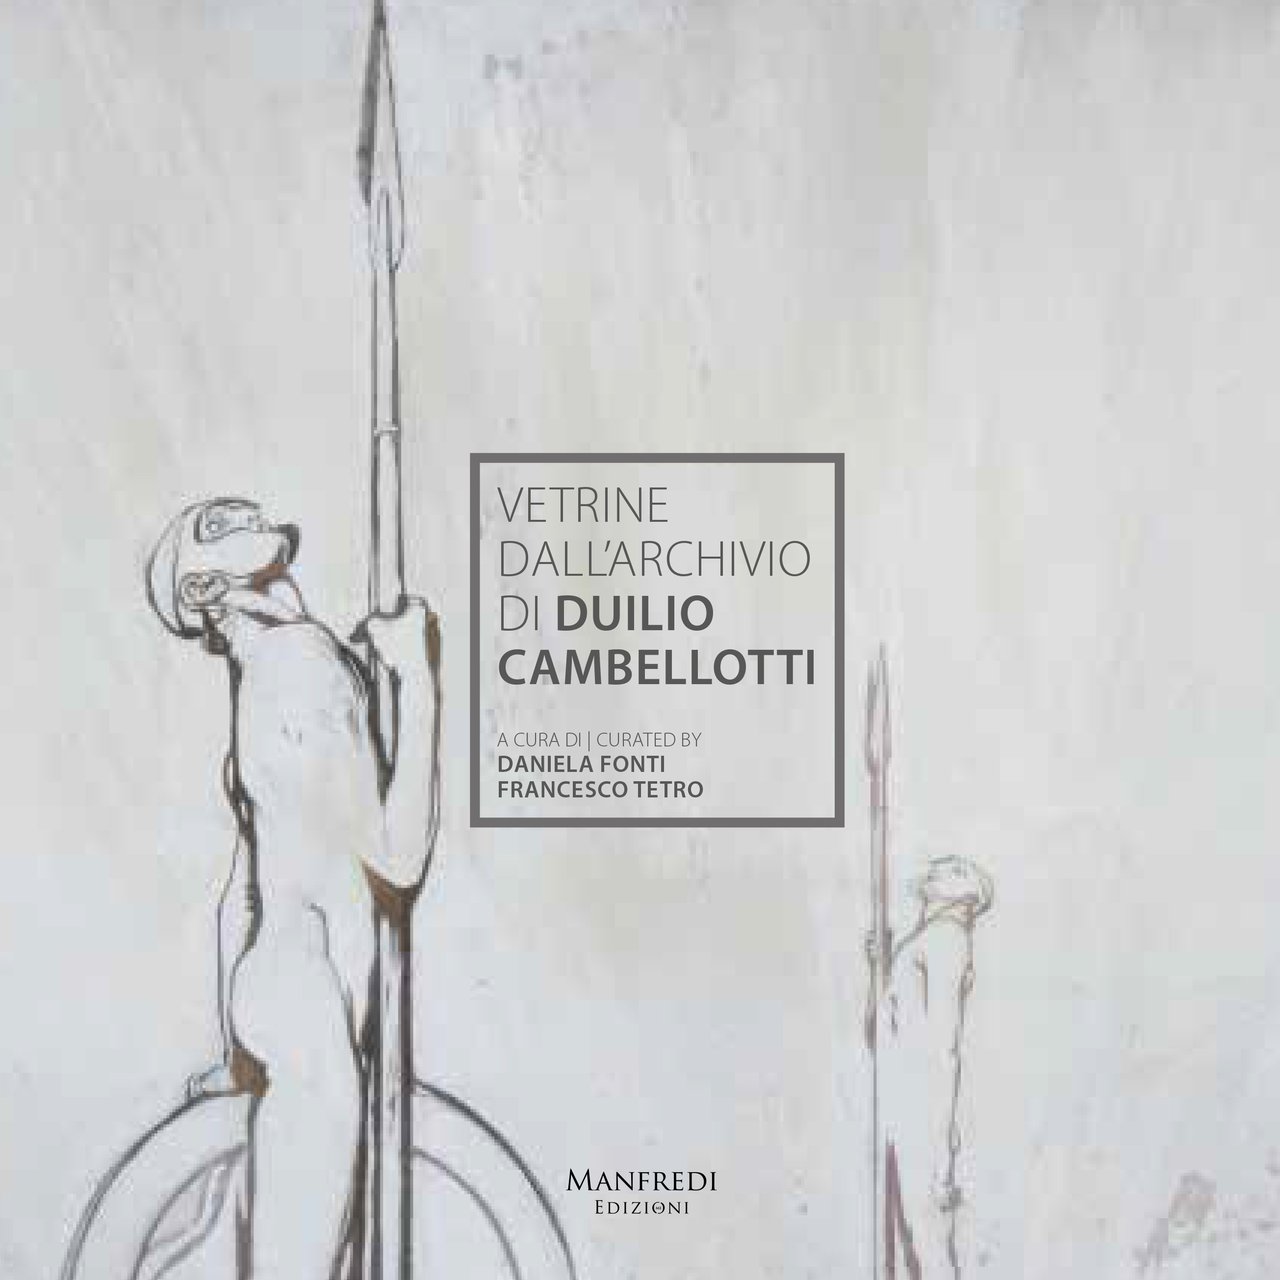 Vetrine dall'archivio di Duilio Cambellotti., Imola, Manfredi Edizioni, 2019